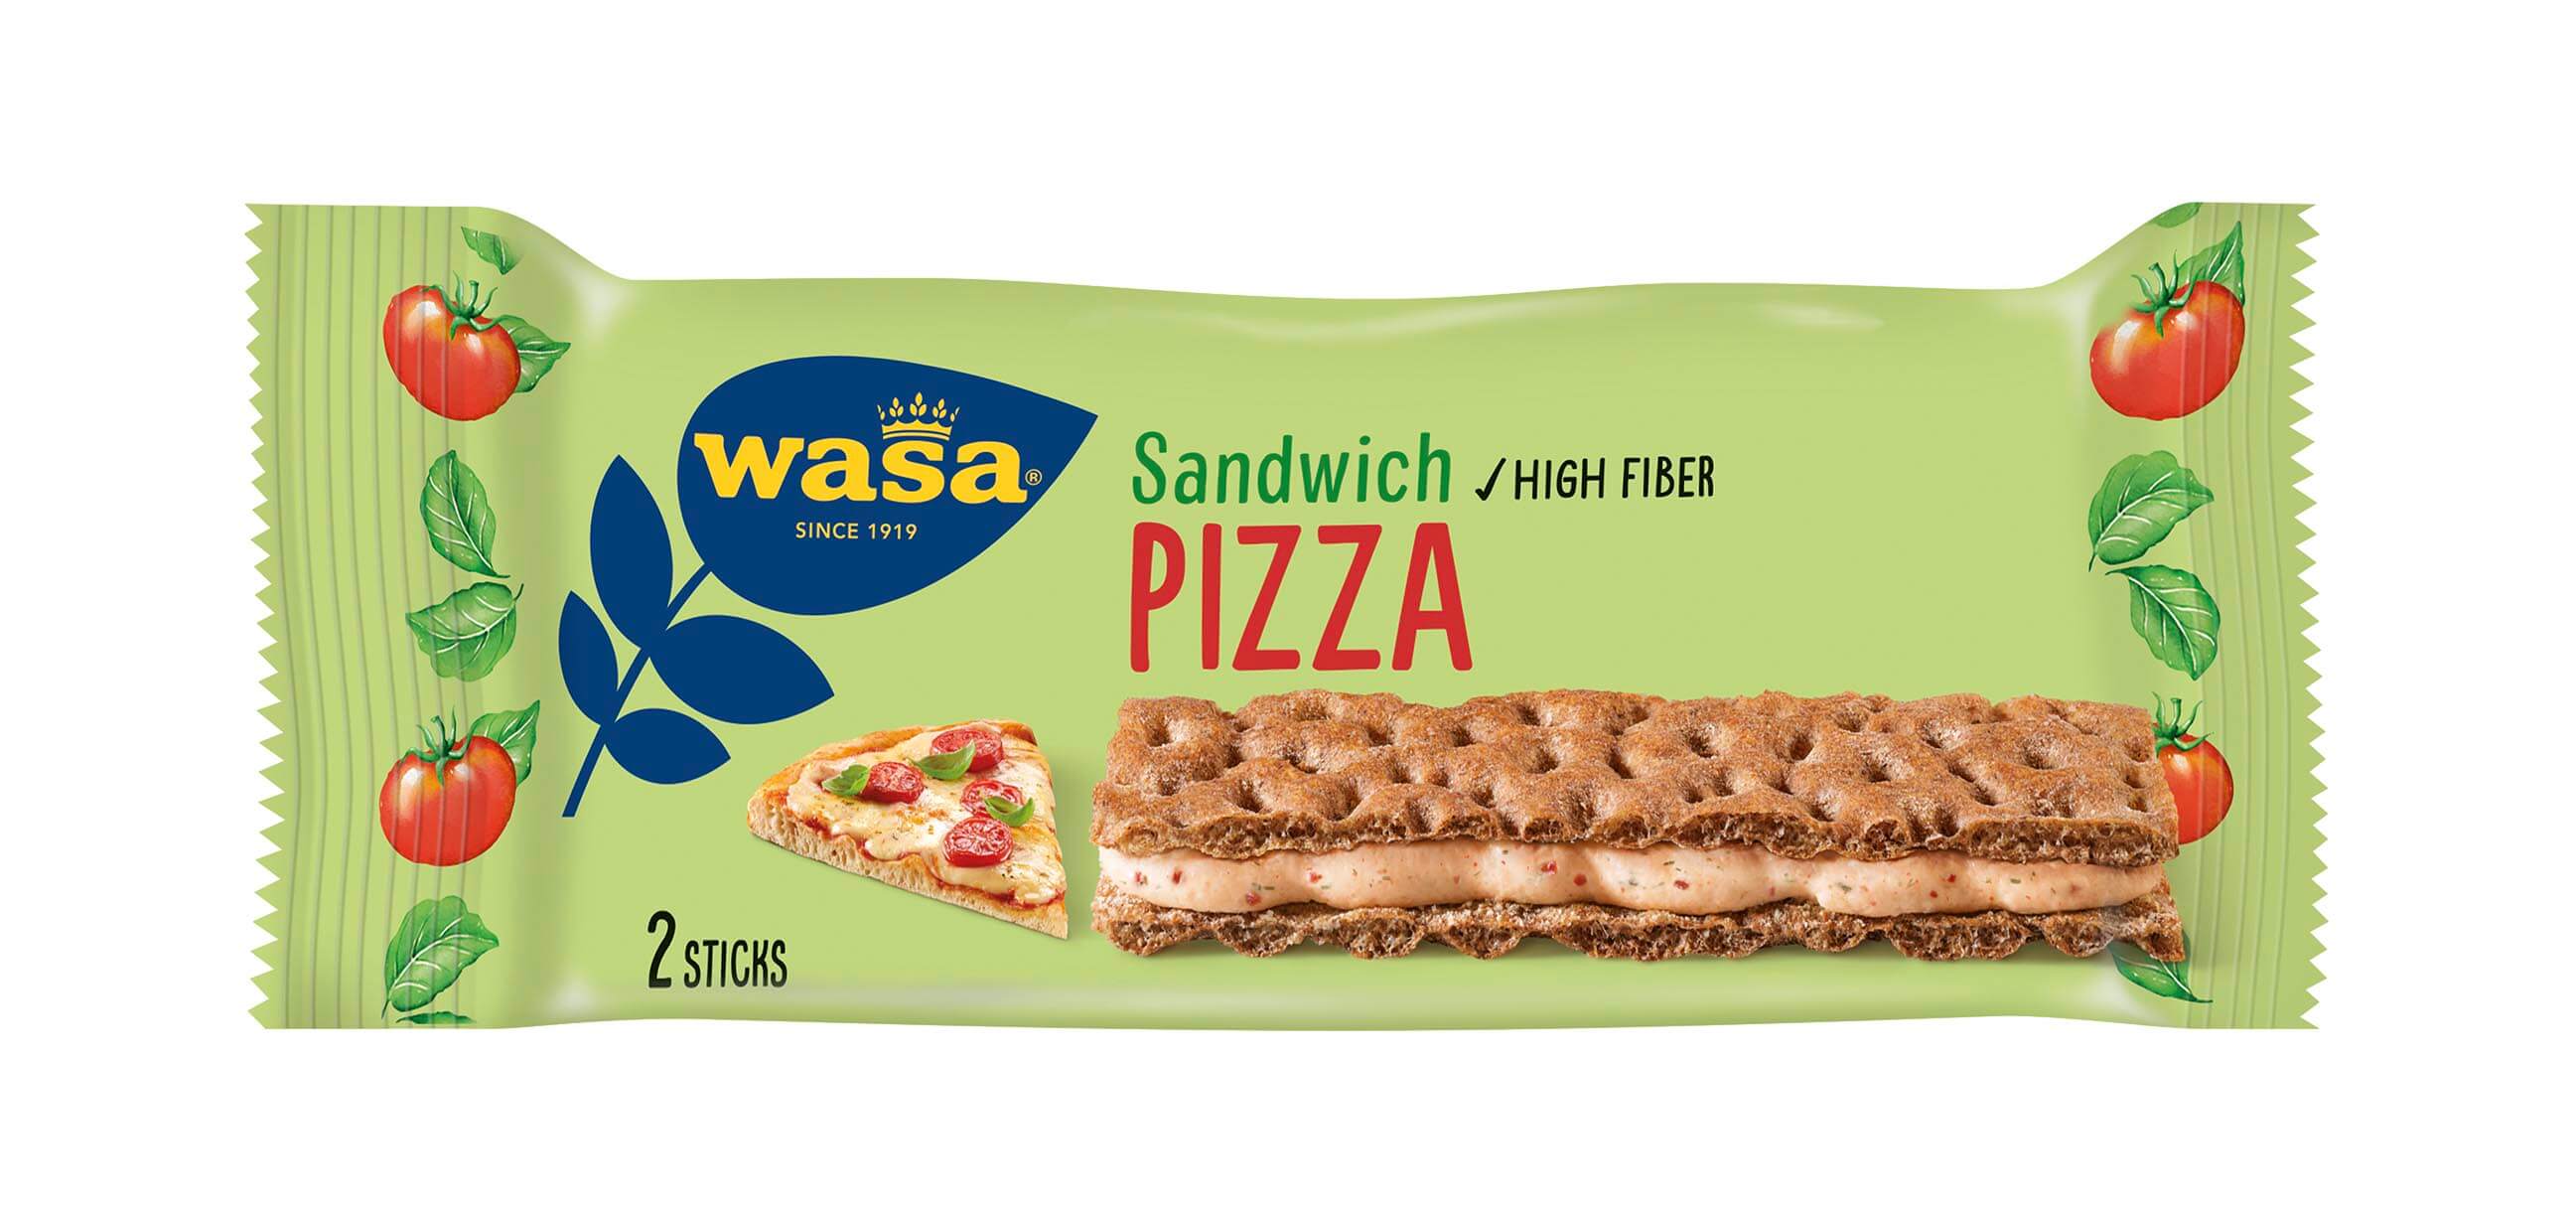 Wasa Sandwich Pizza - Upptäck det perfekta mellanmålet, knäckebröd med krämig ostfyllning. Utmärkt som enkelt mellanmål när du är på språng - perfekt för dig som söker tips på matiga mellanmål för barn och vuxna